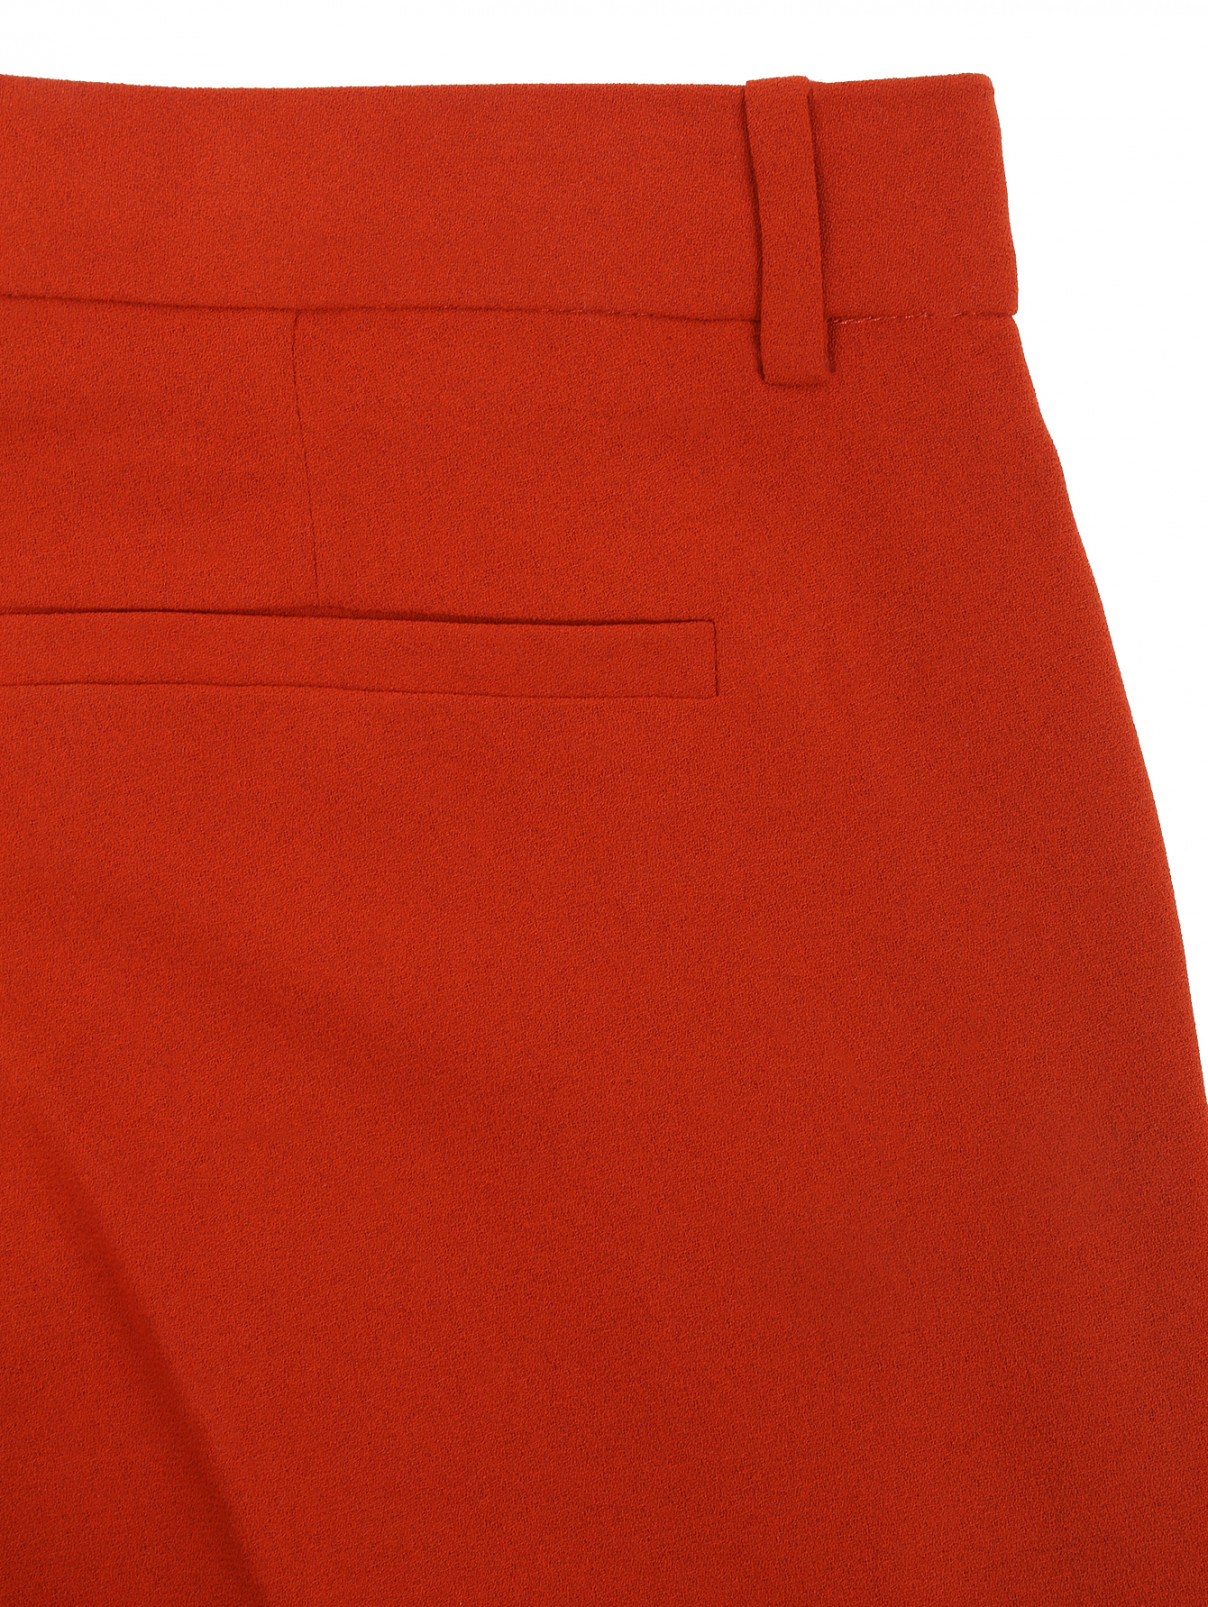 Расклешенные брюки со стрелками Joie  –  Деталь1  – Цвет:  Оранжевый